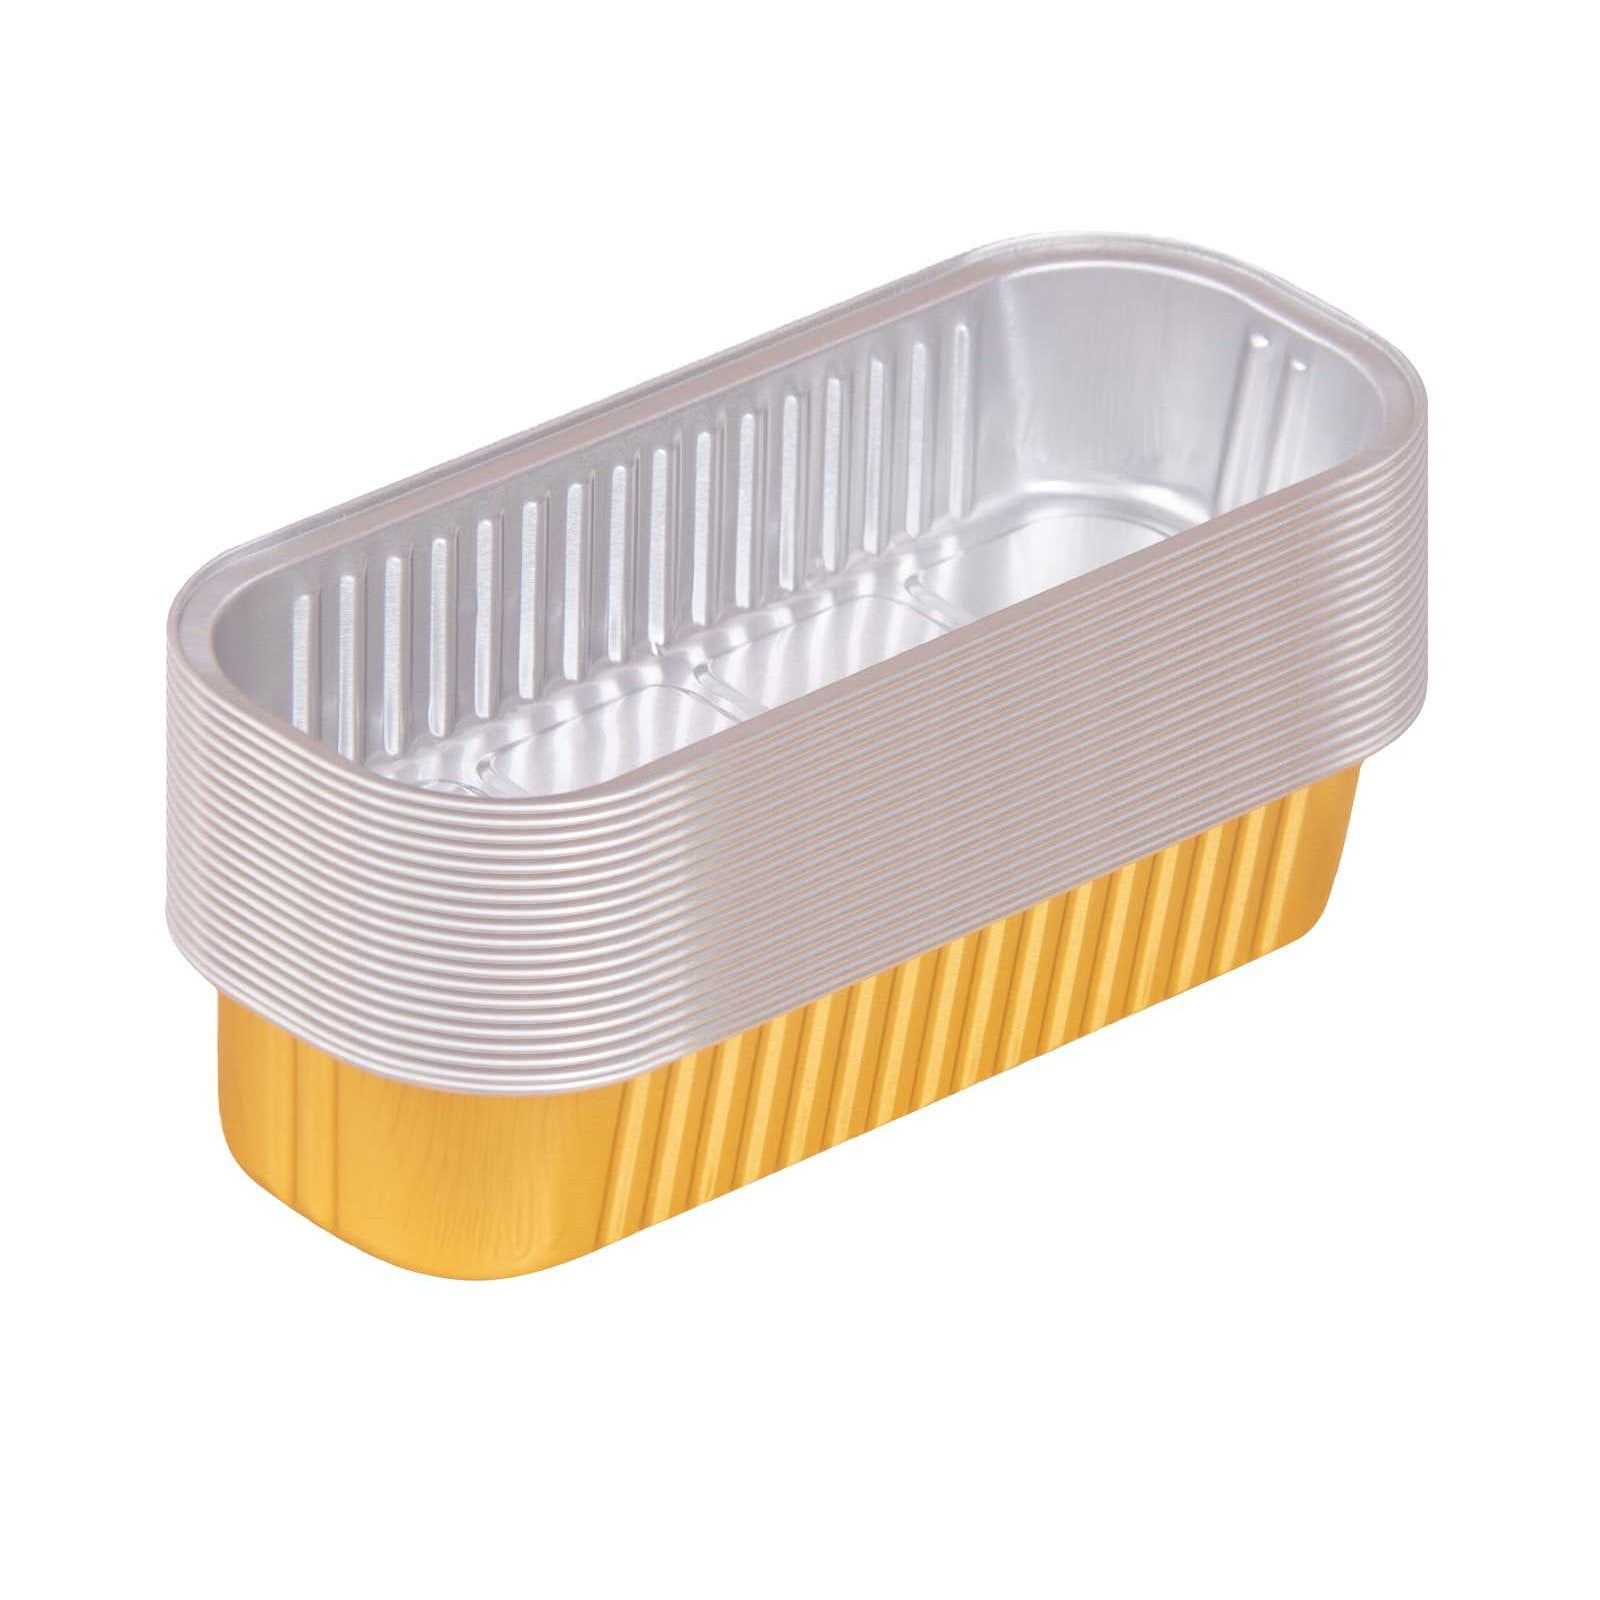 50Pcs Disposable Rectangle Aluminum Foil Food Tray Baking Pan